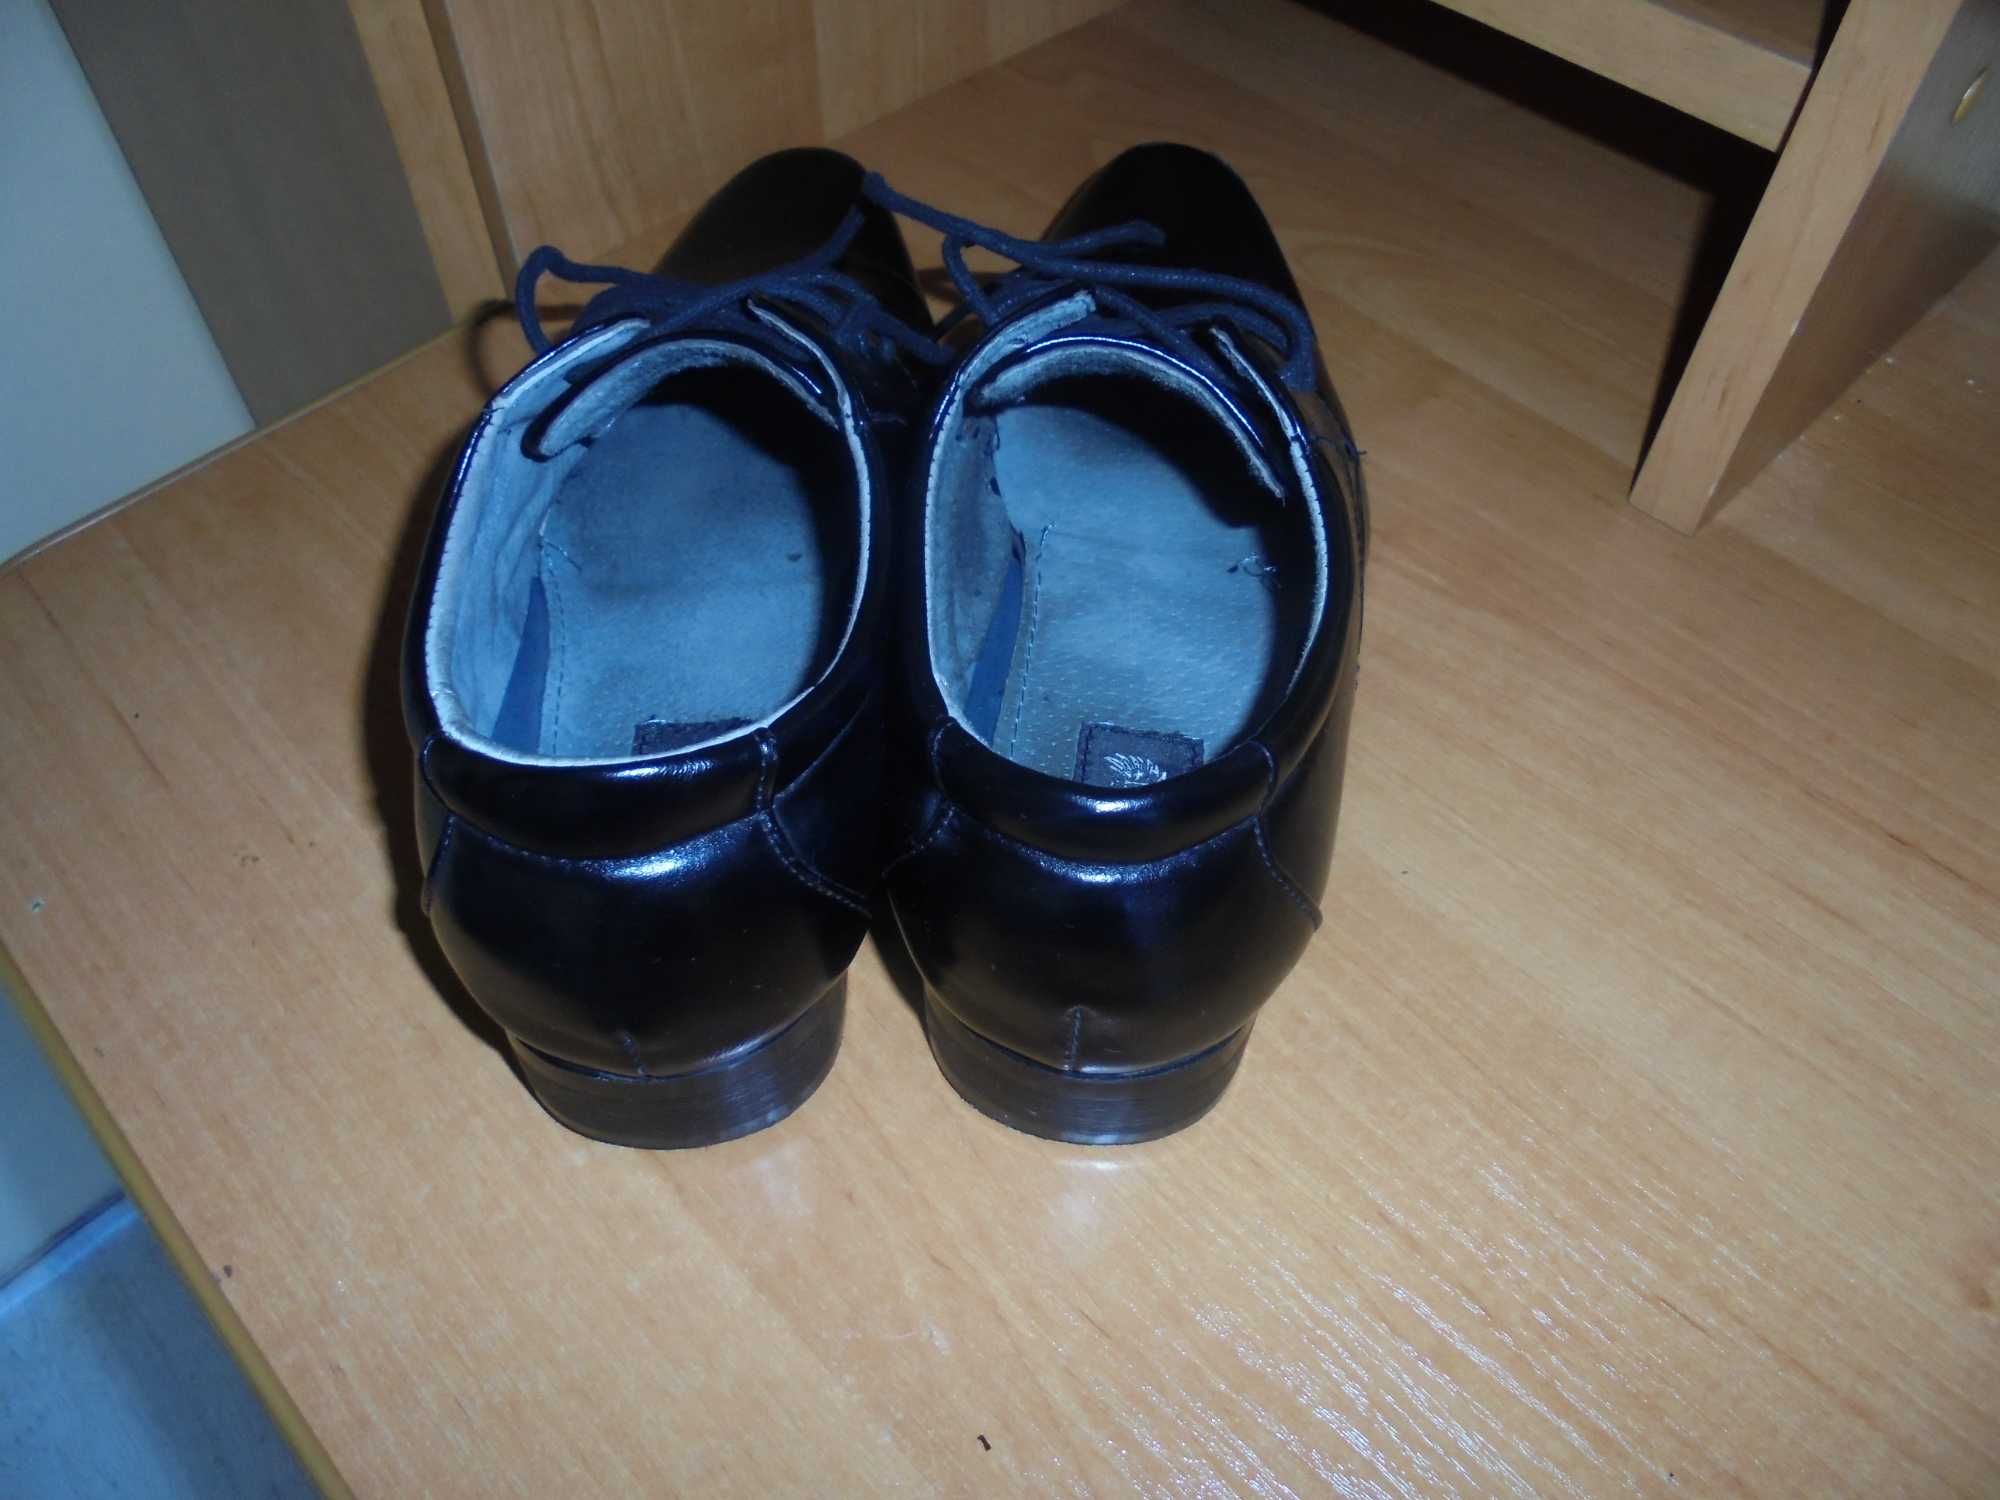 Eleganckie czarne buty chłopięce